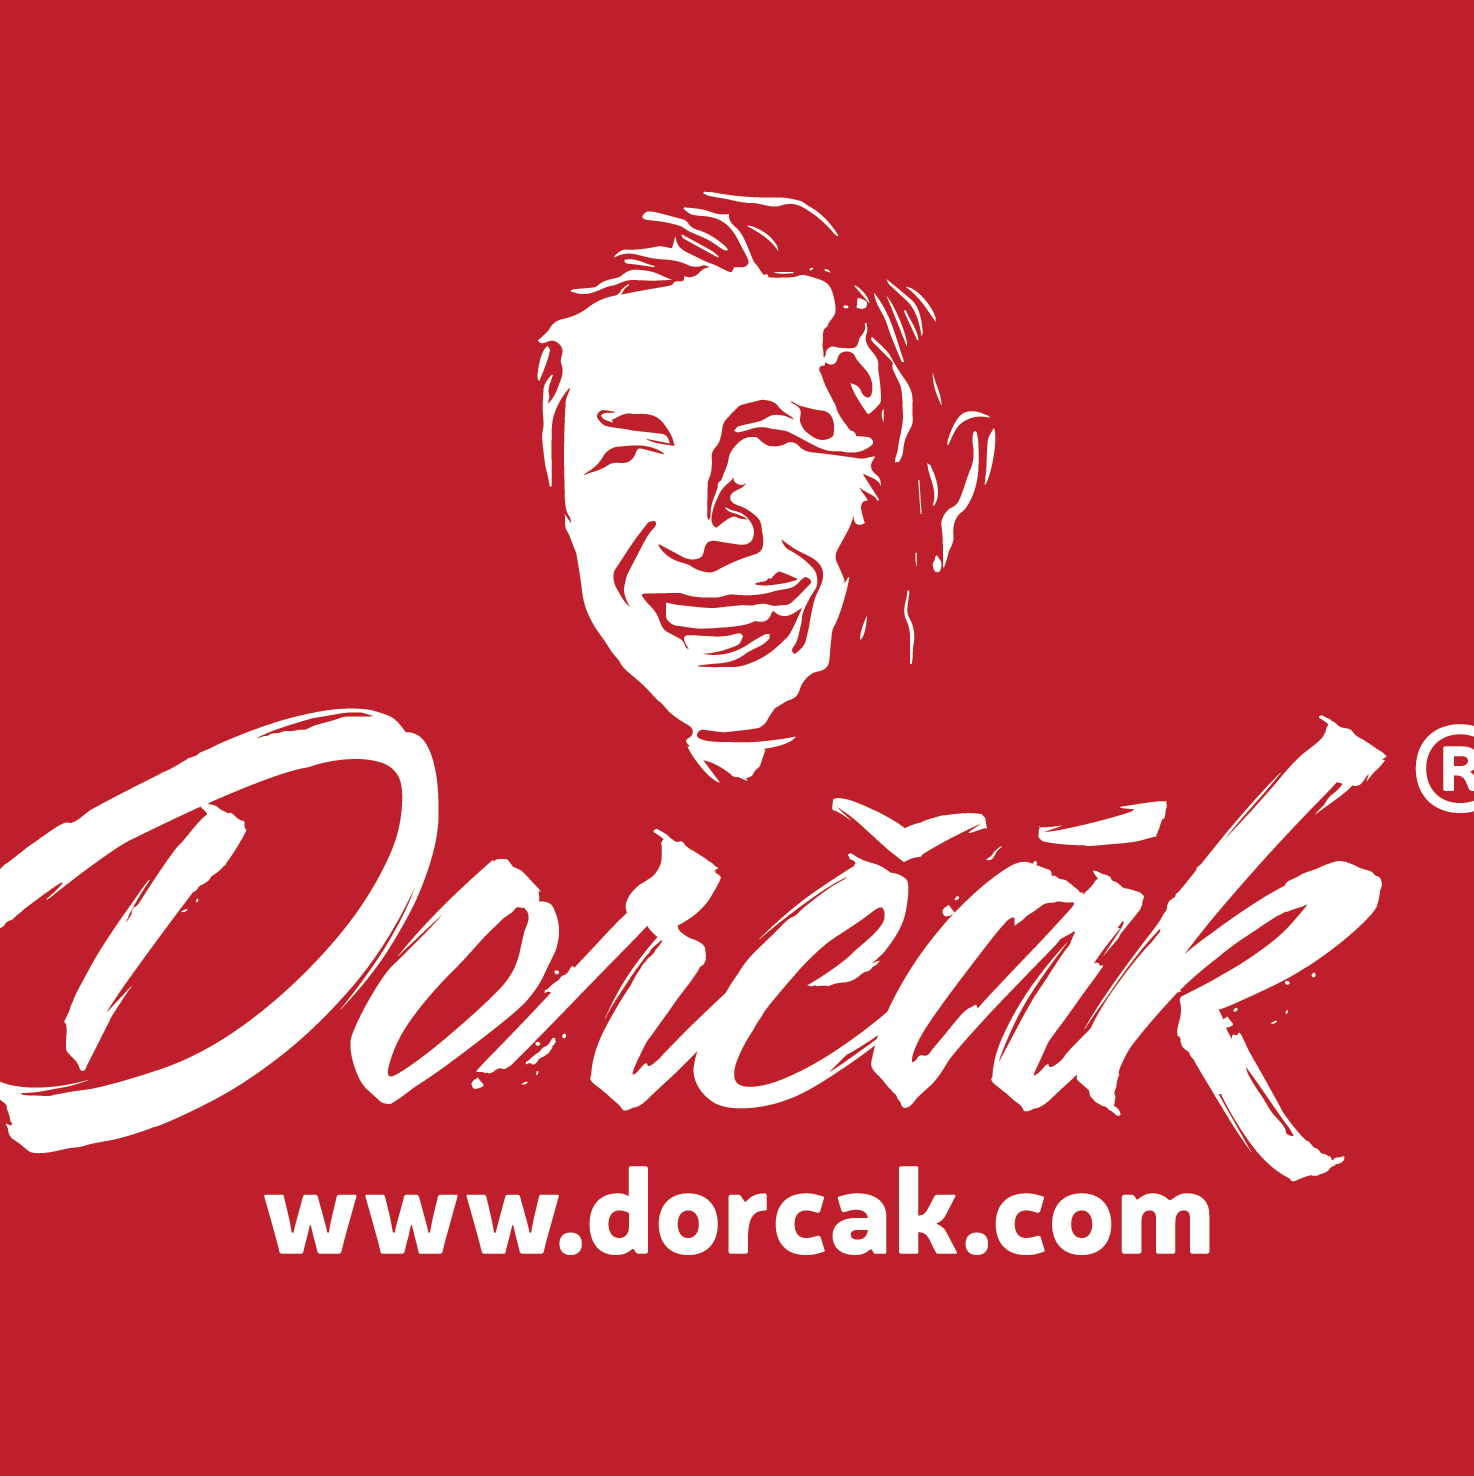 Dorcak.pl